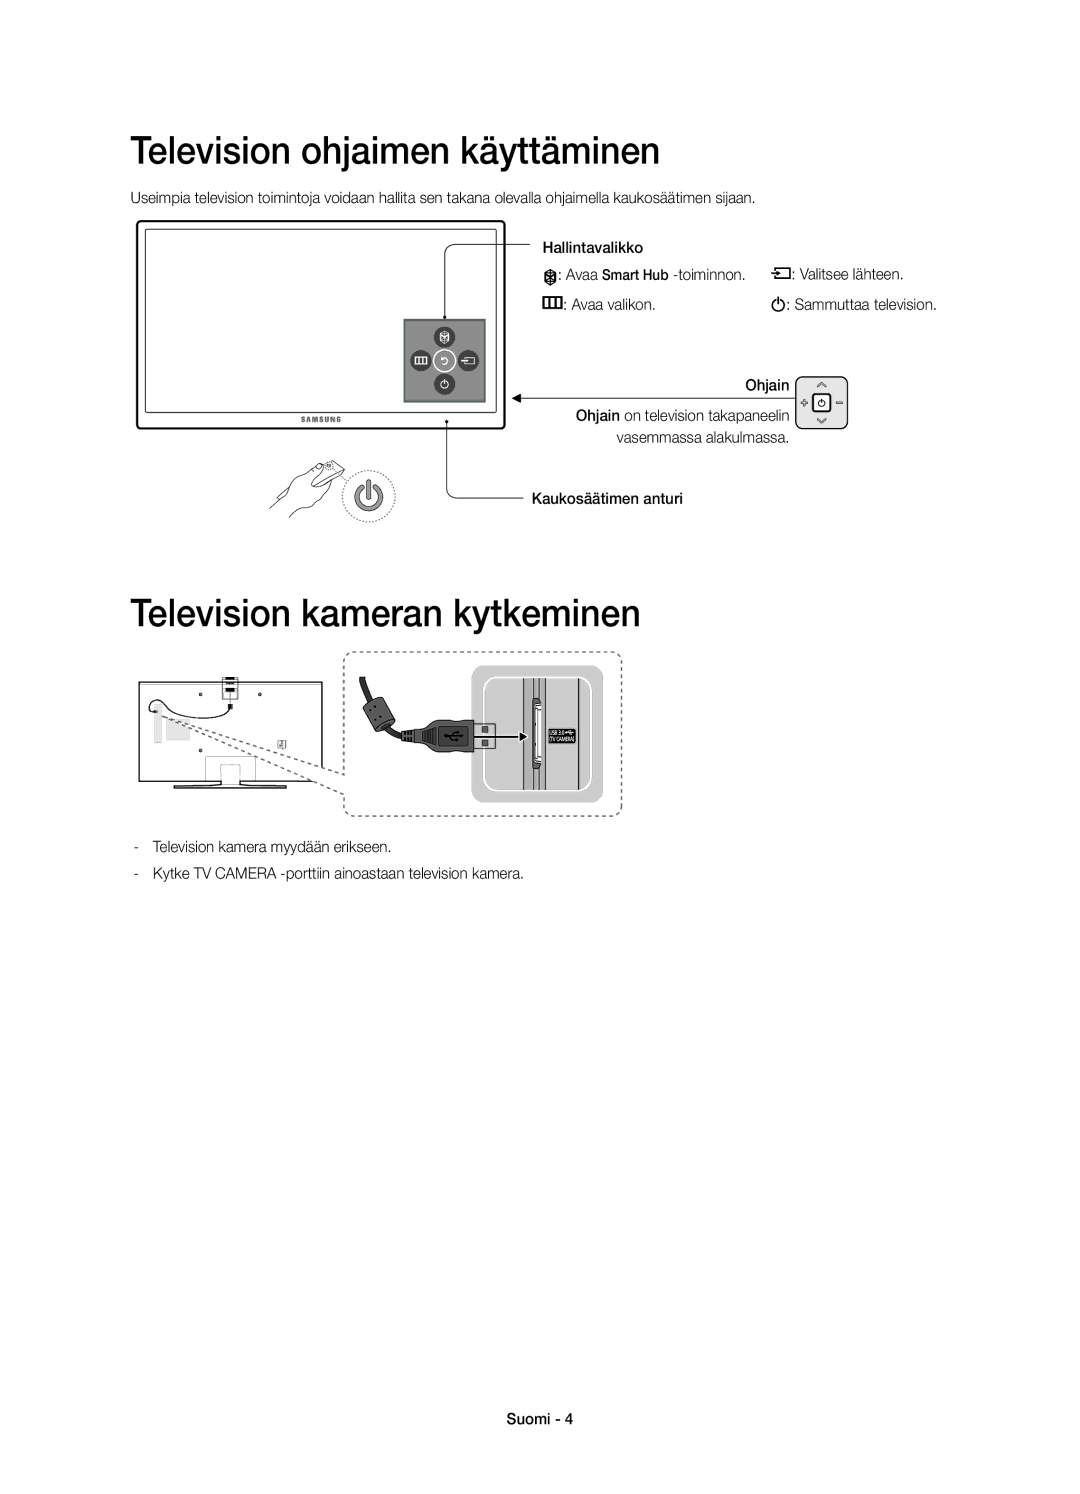 Samsung UE65JU7505TXXE manual Television ohjaimen käyttäminen, Television kameran kytkeminen, Ohjain, Kaukosäätimen anturi 